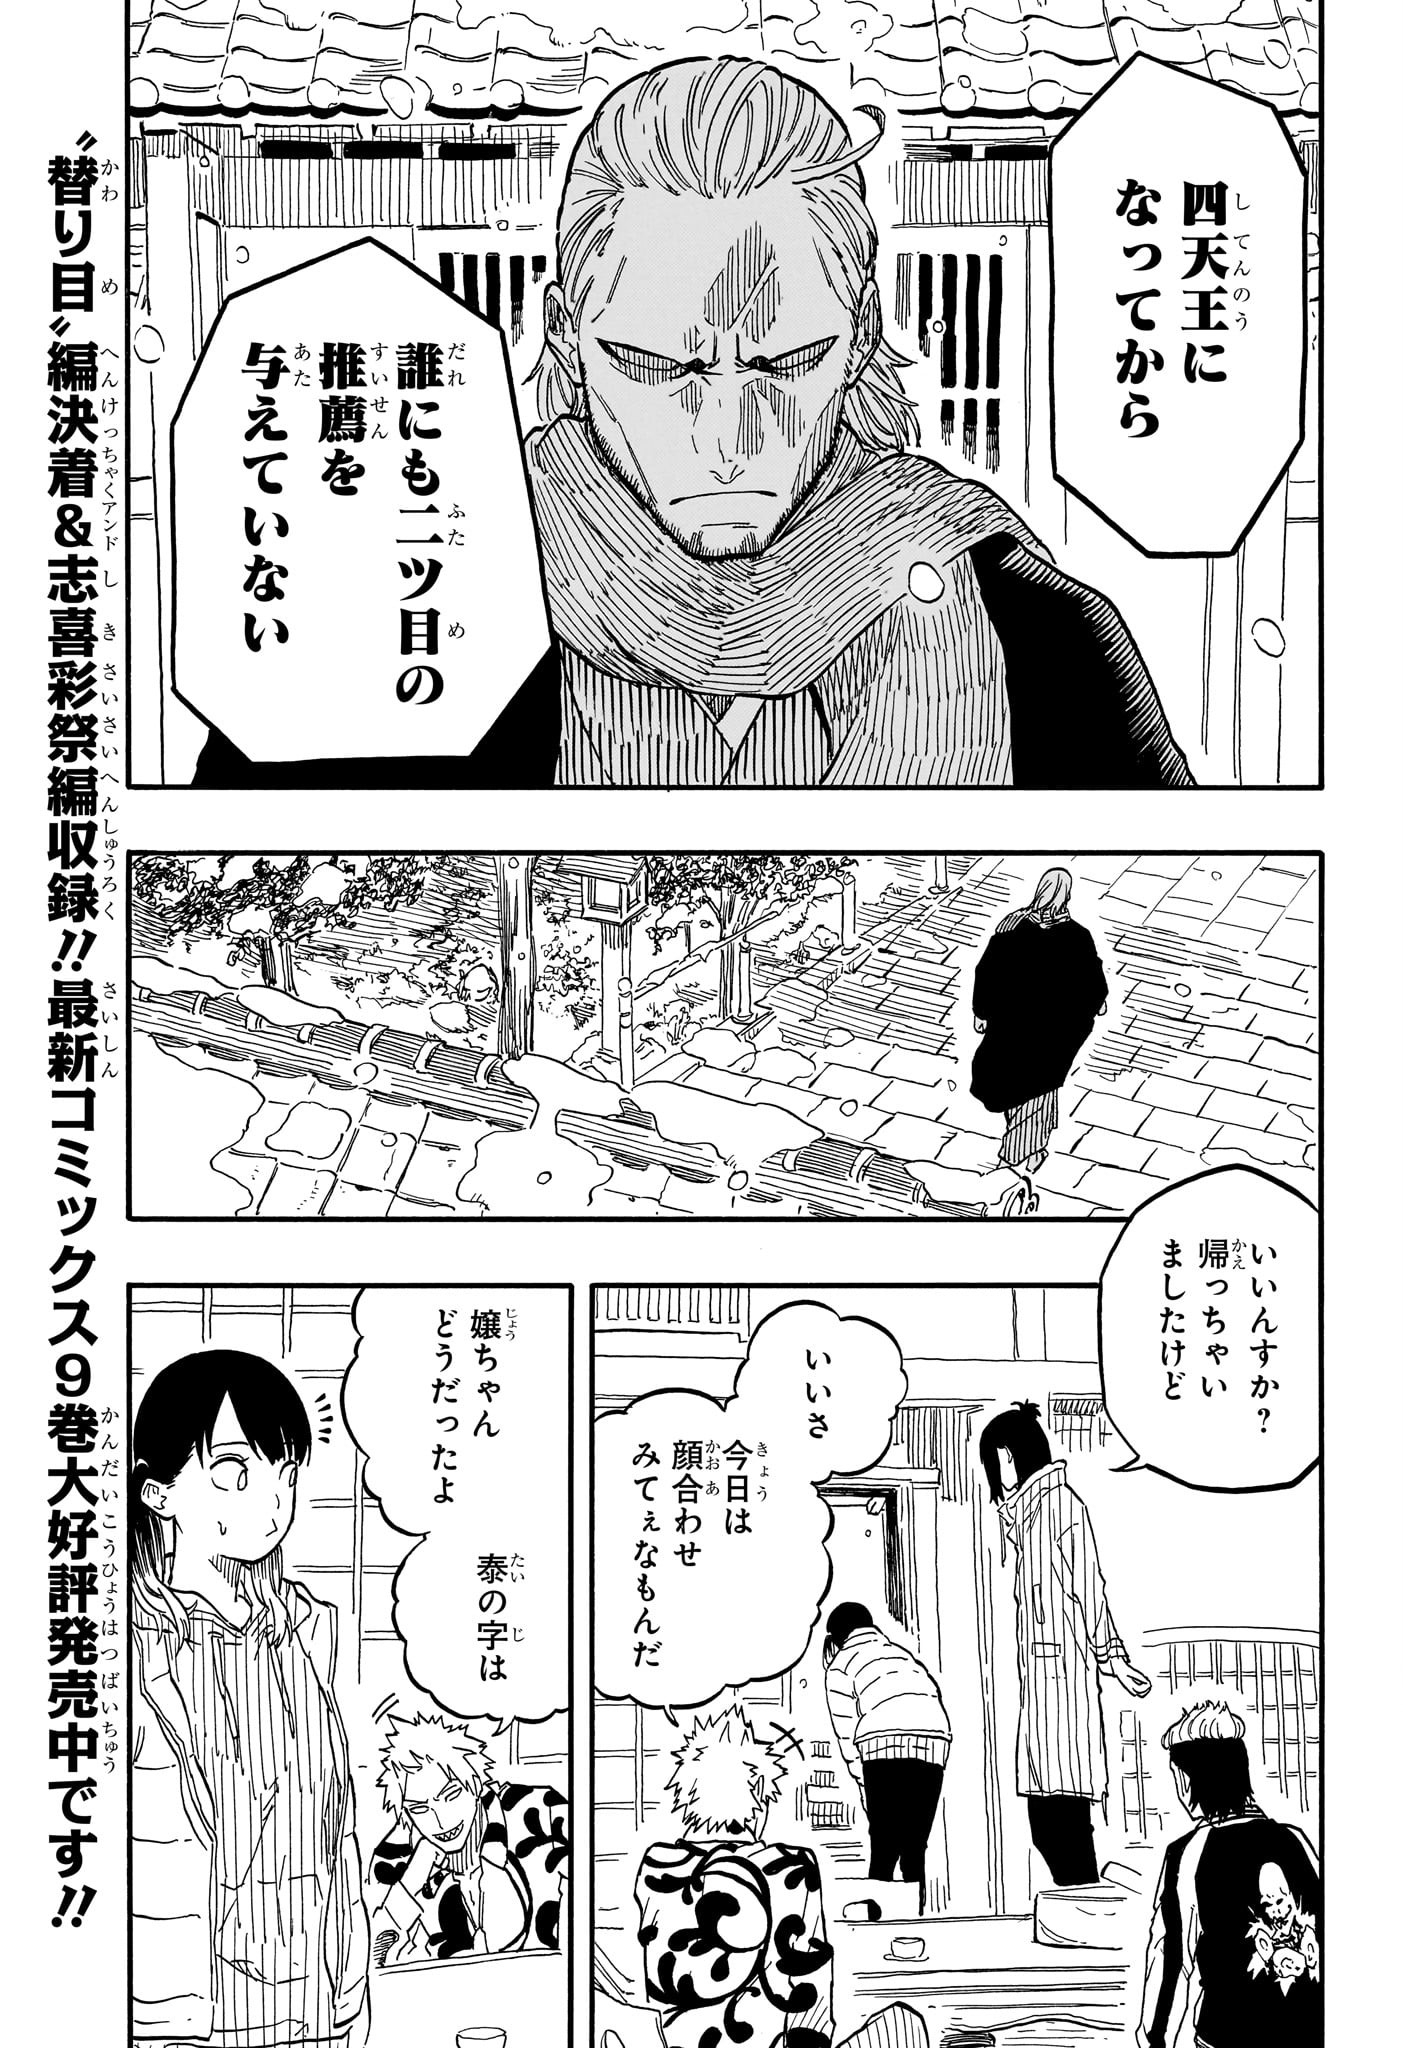 Akane-Banashi - Chapter 92 - Page 3